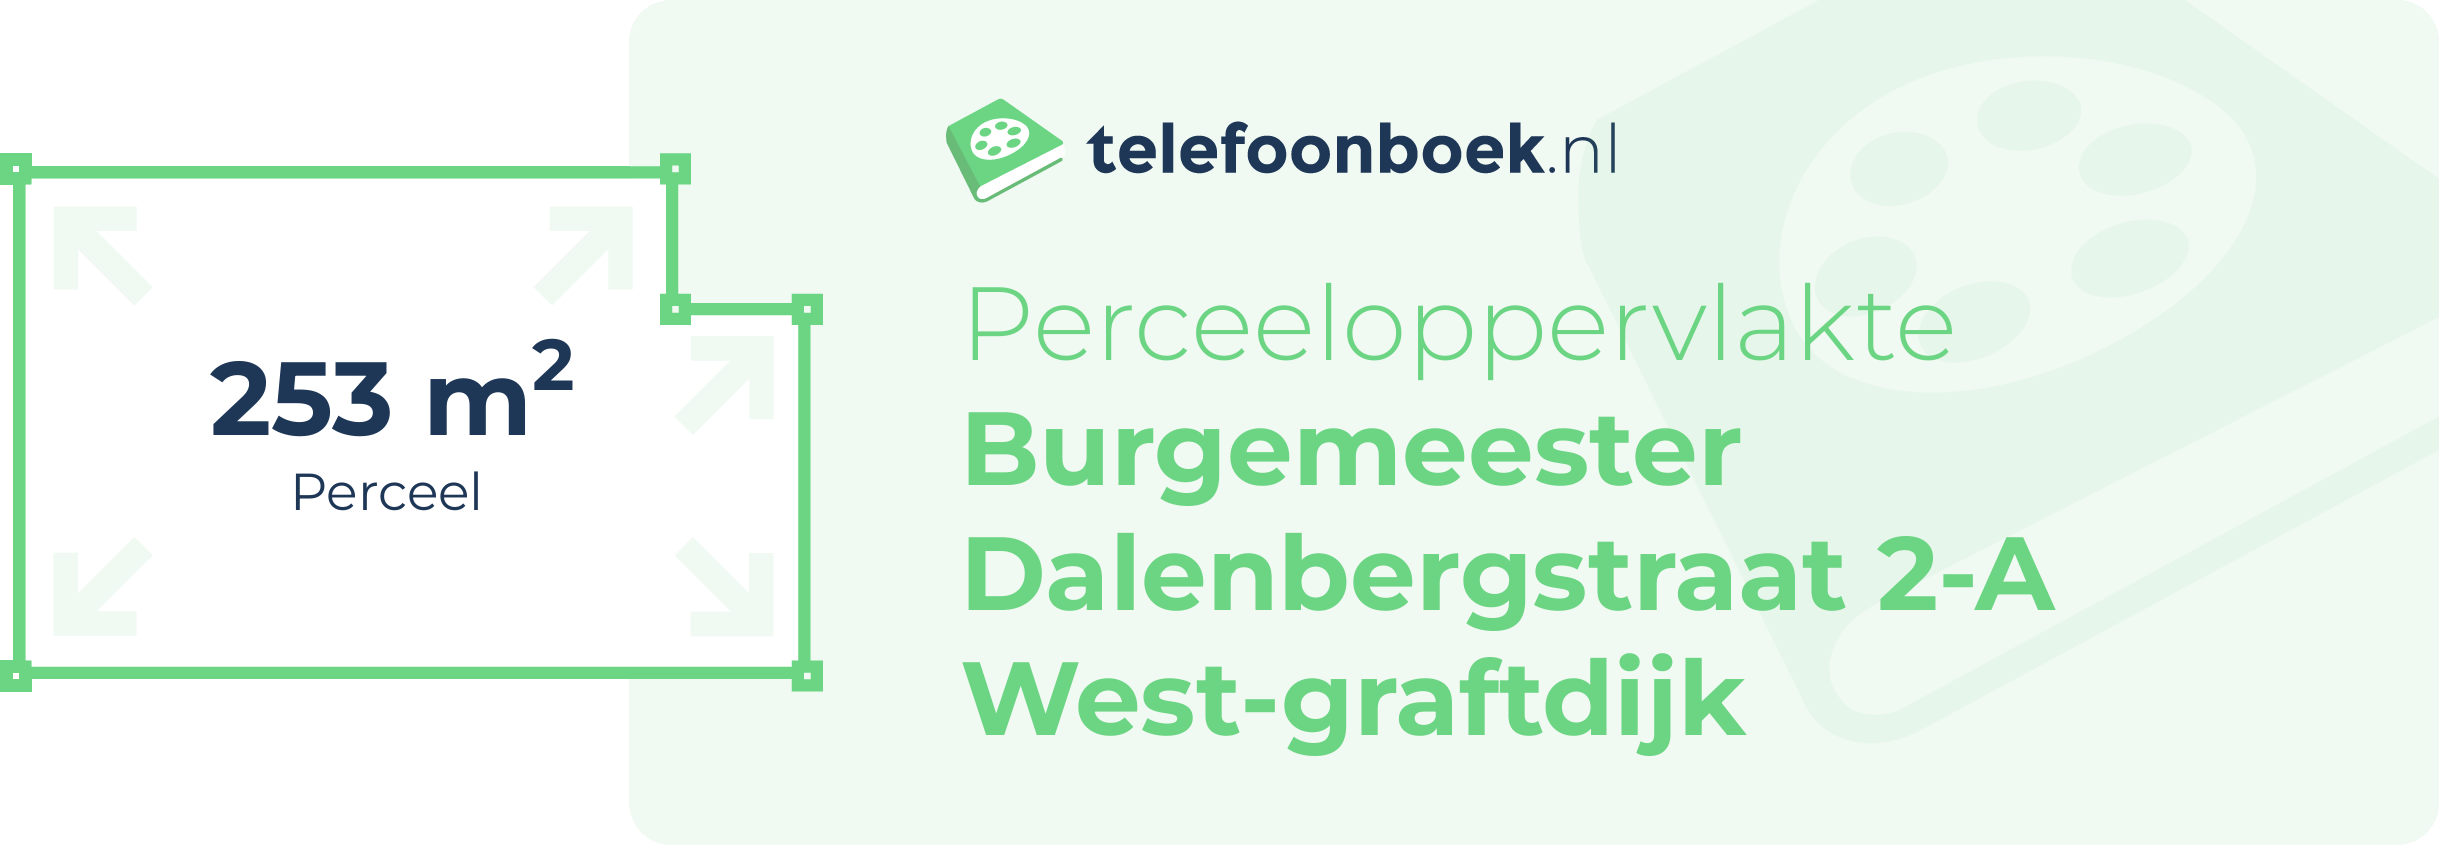 Perceeloppervlakte Burgemeester Dalenbergstraat 2-A West-Graftdijk